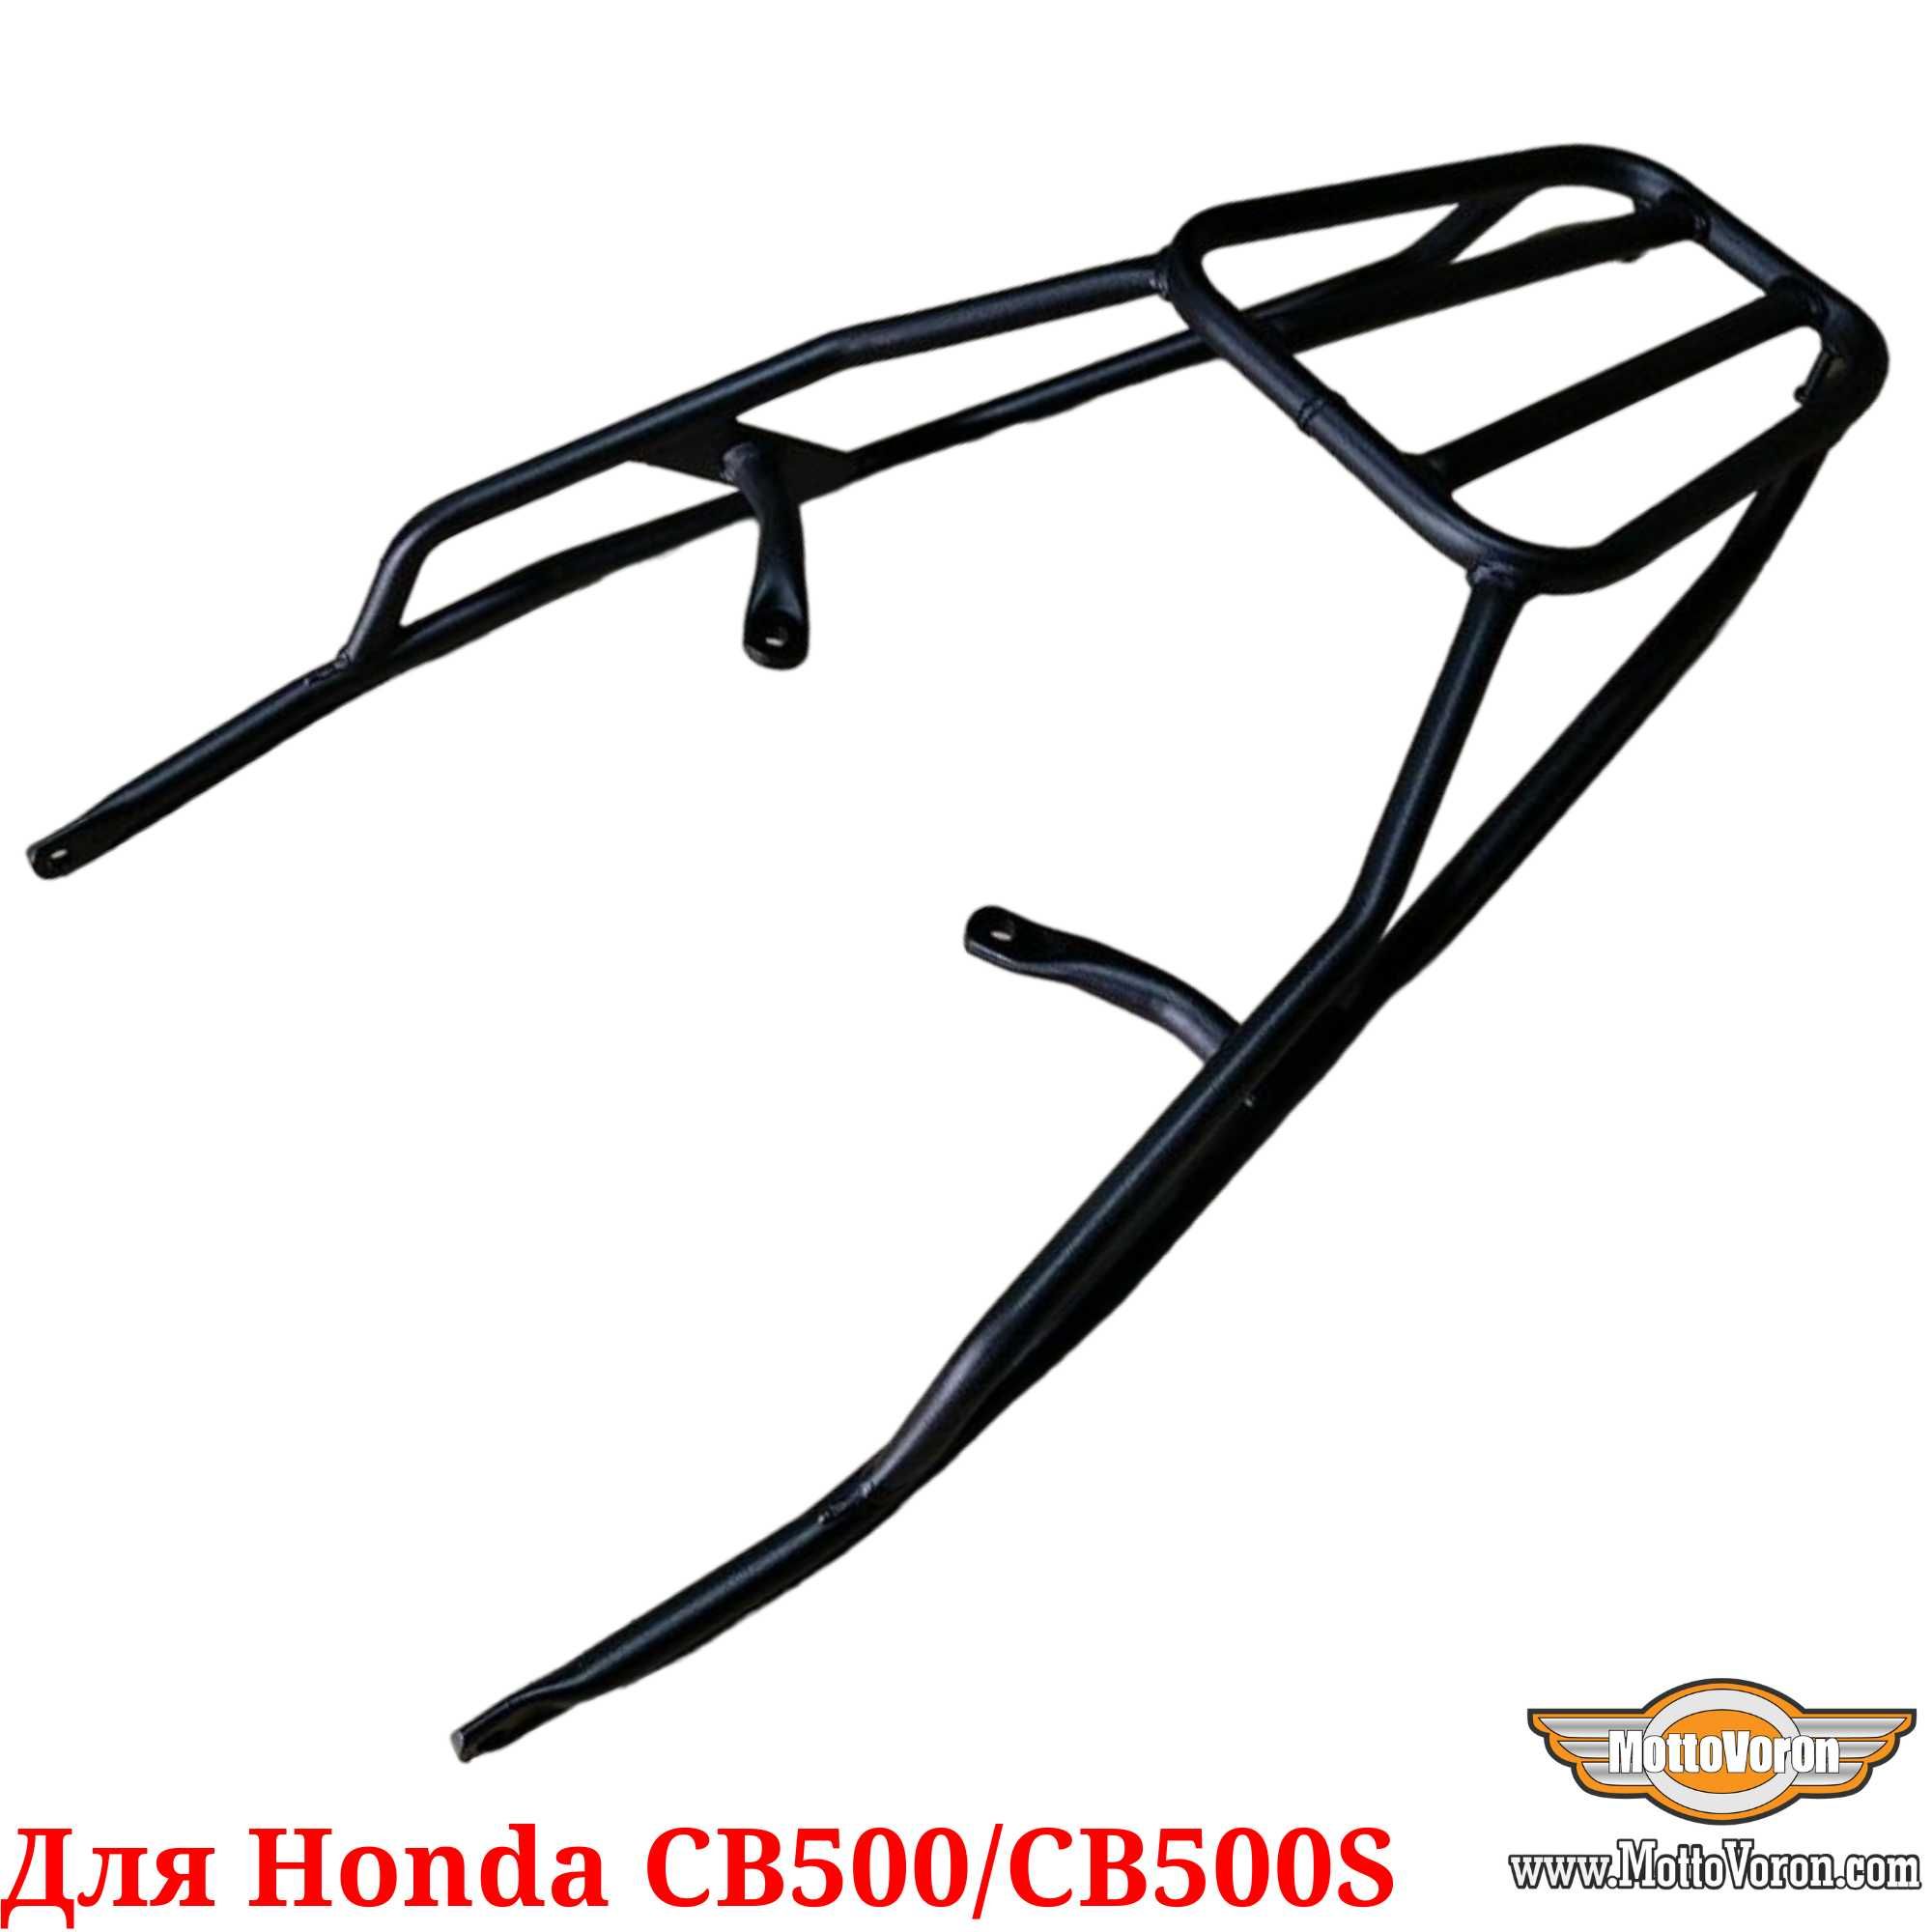 Honda CB 500 багажник усиленный под кофр или сумку для Honda CB 500 S